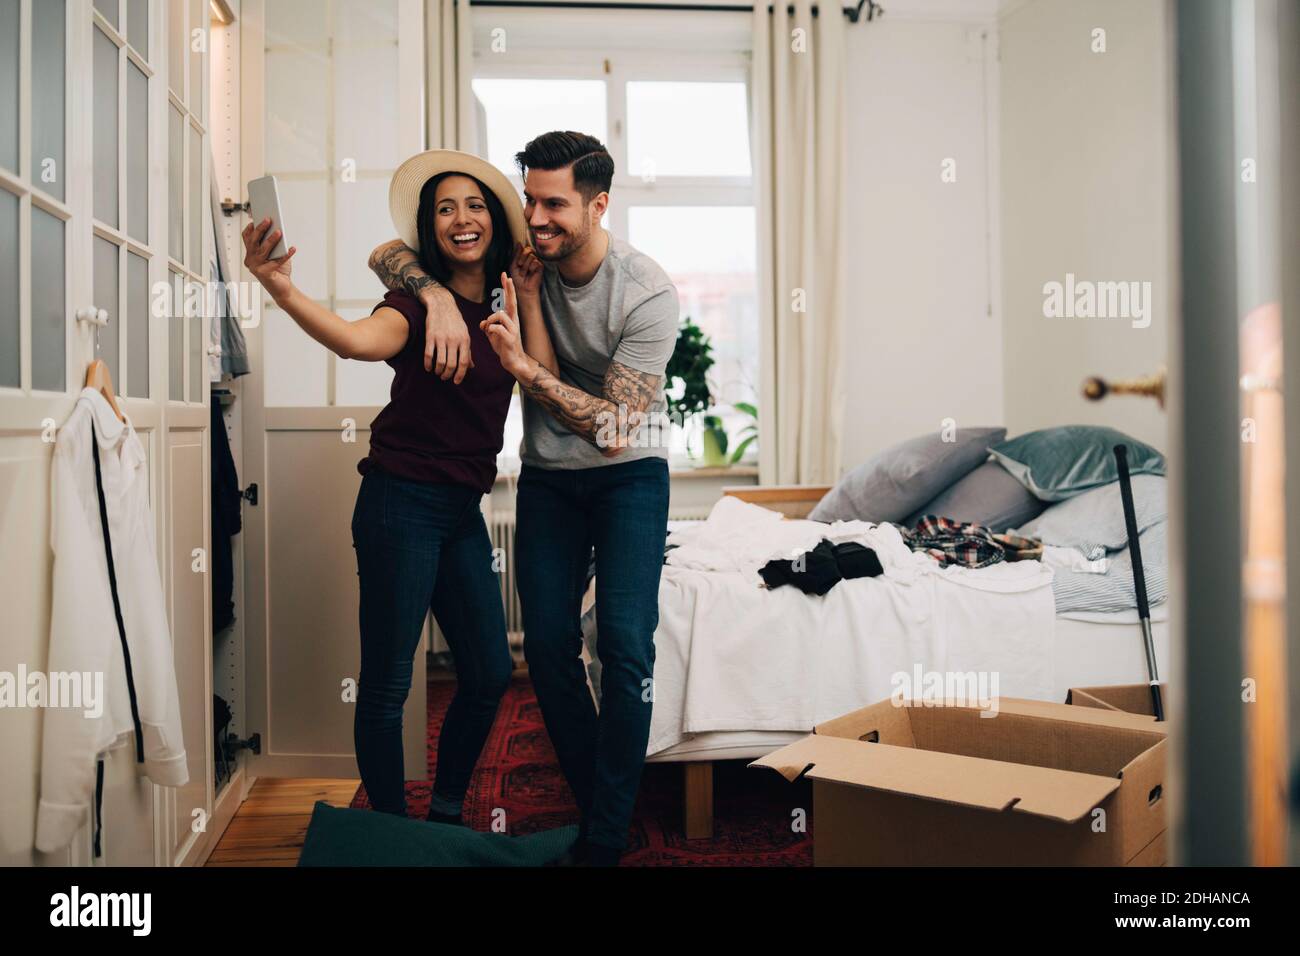 Lächelndes Paar, das Selfie auf dem Handy nimmt, während es im Stehen ist Schlafzimmer Stockfoto